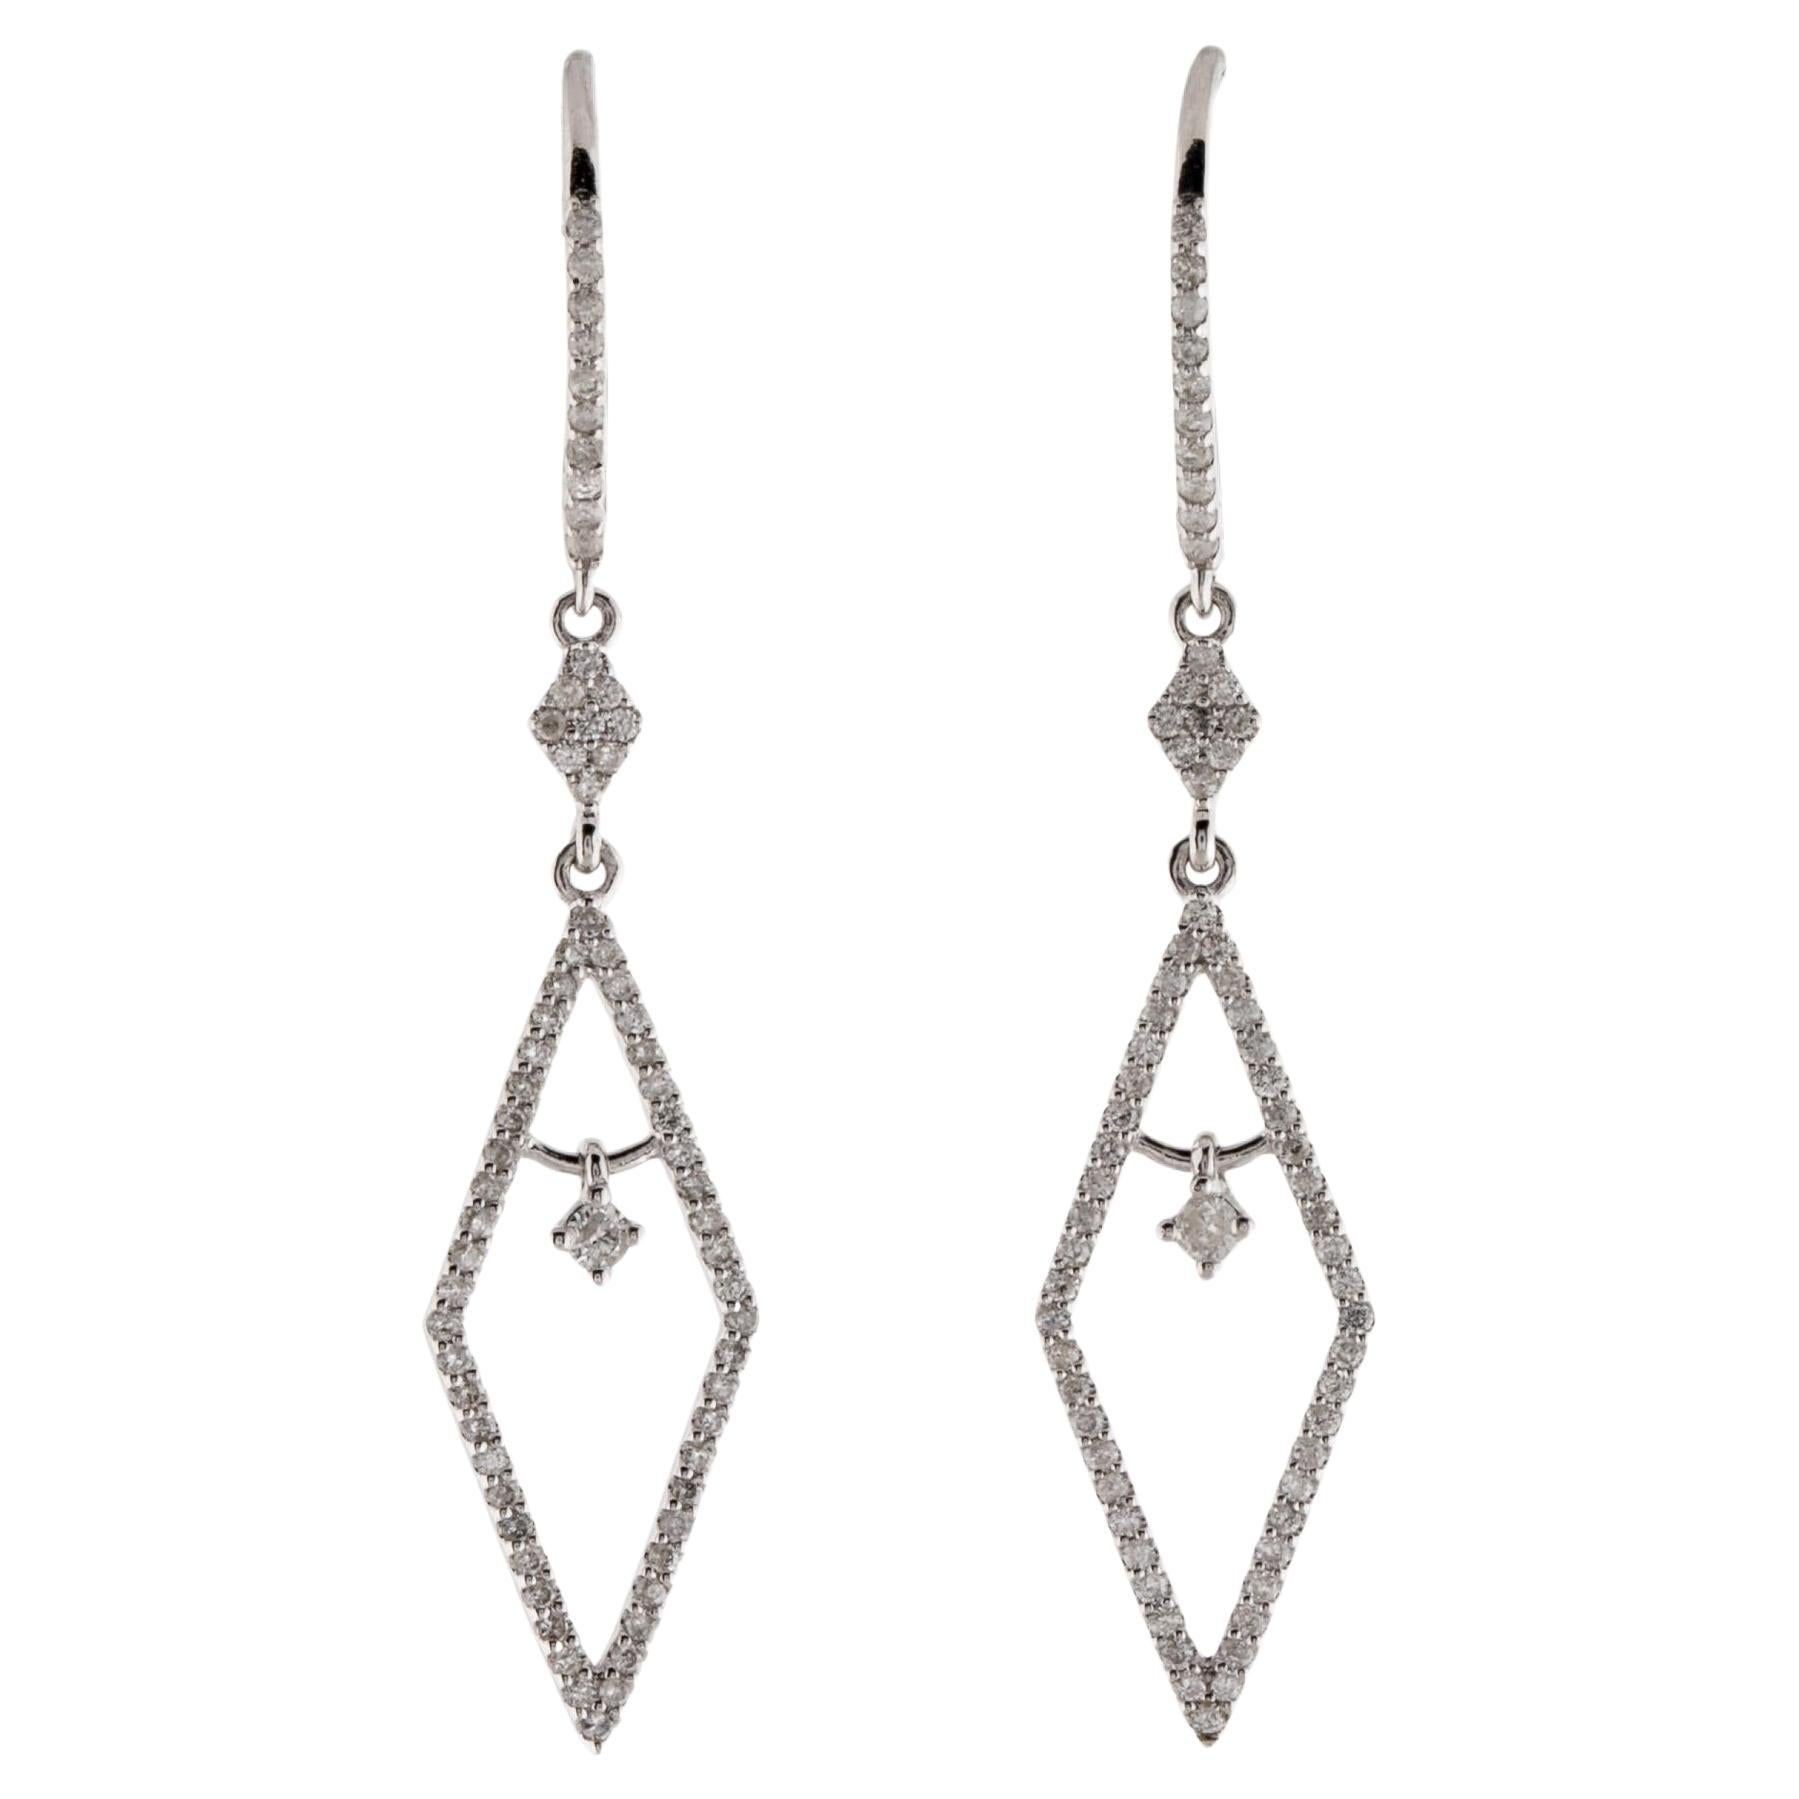 14K Diamond Drop Earrings - Luxe Sparkle, Elegant Design, Timeless Beauty